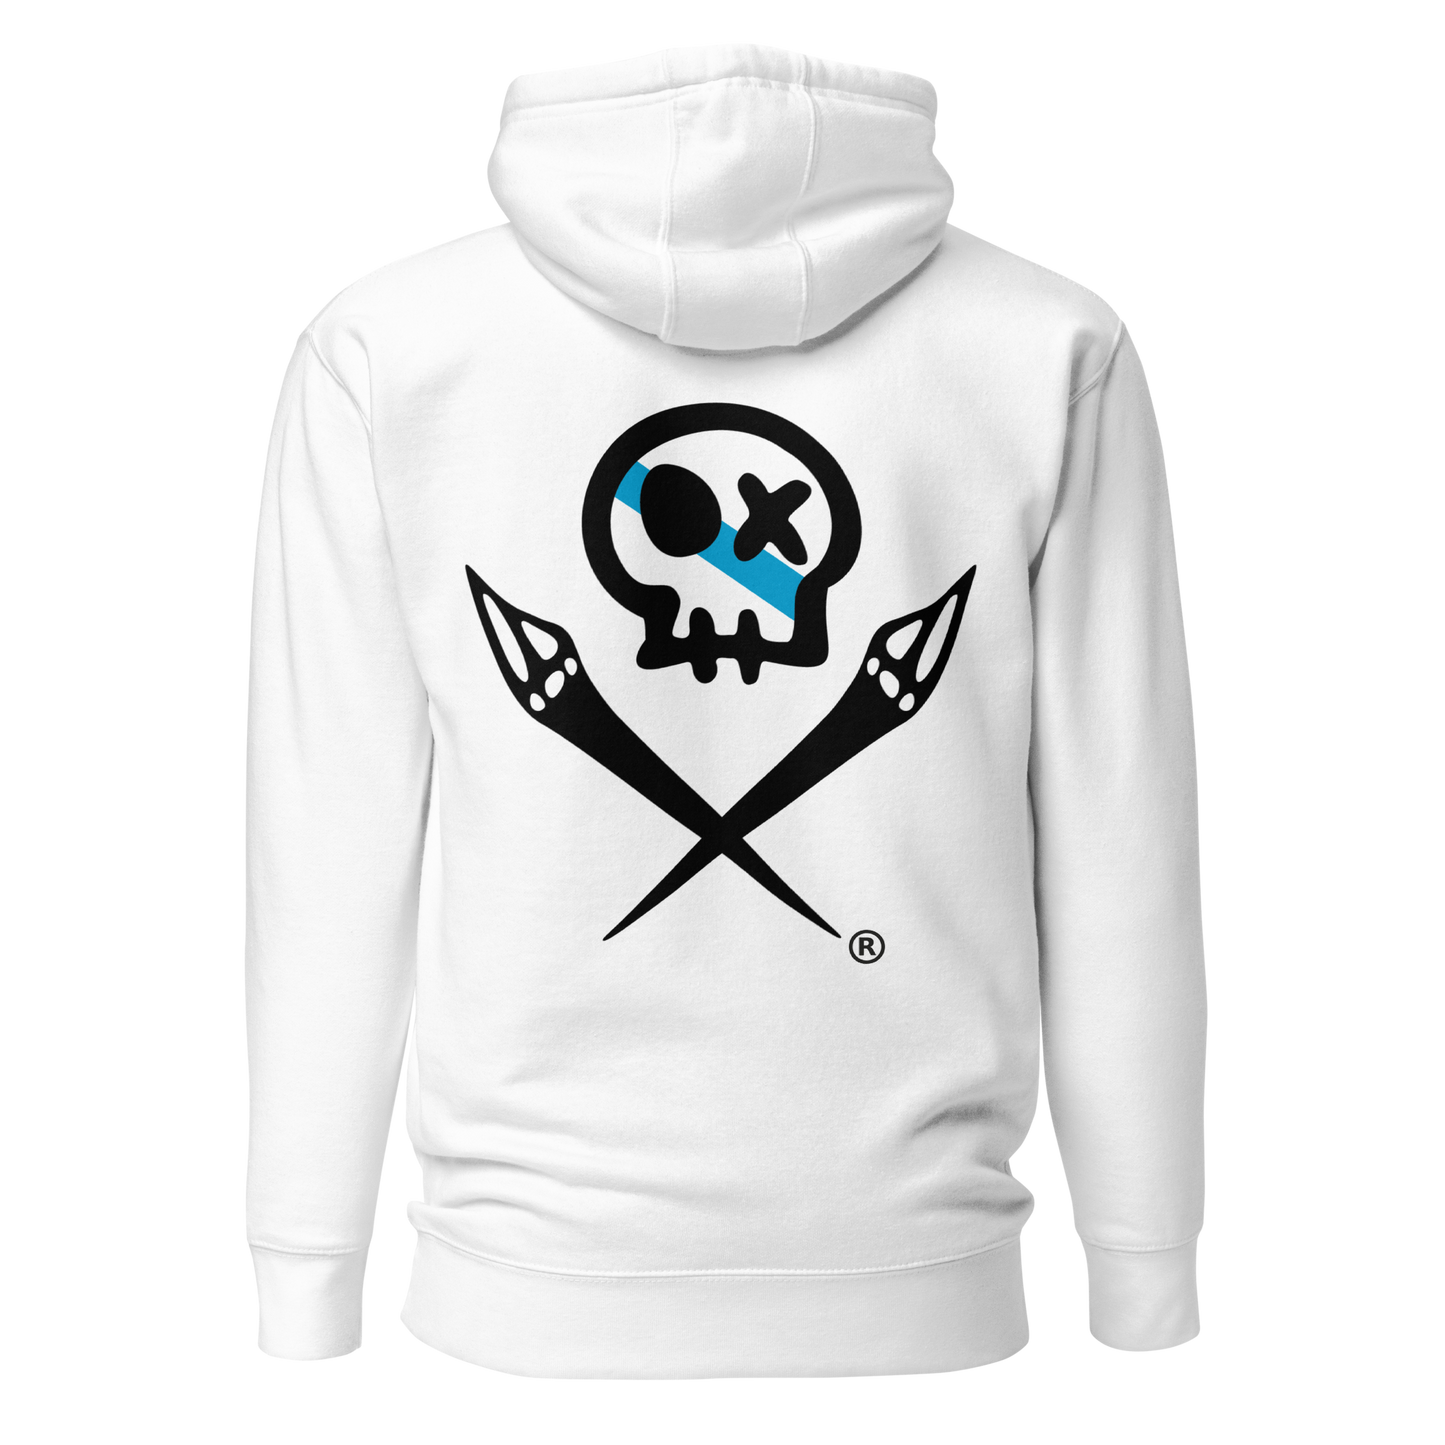 Sweatshirt #RAXIDO // Premium Hoodie with Hood and Pocket // Unisex